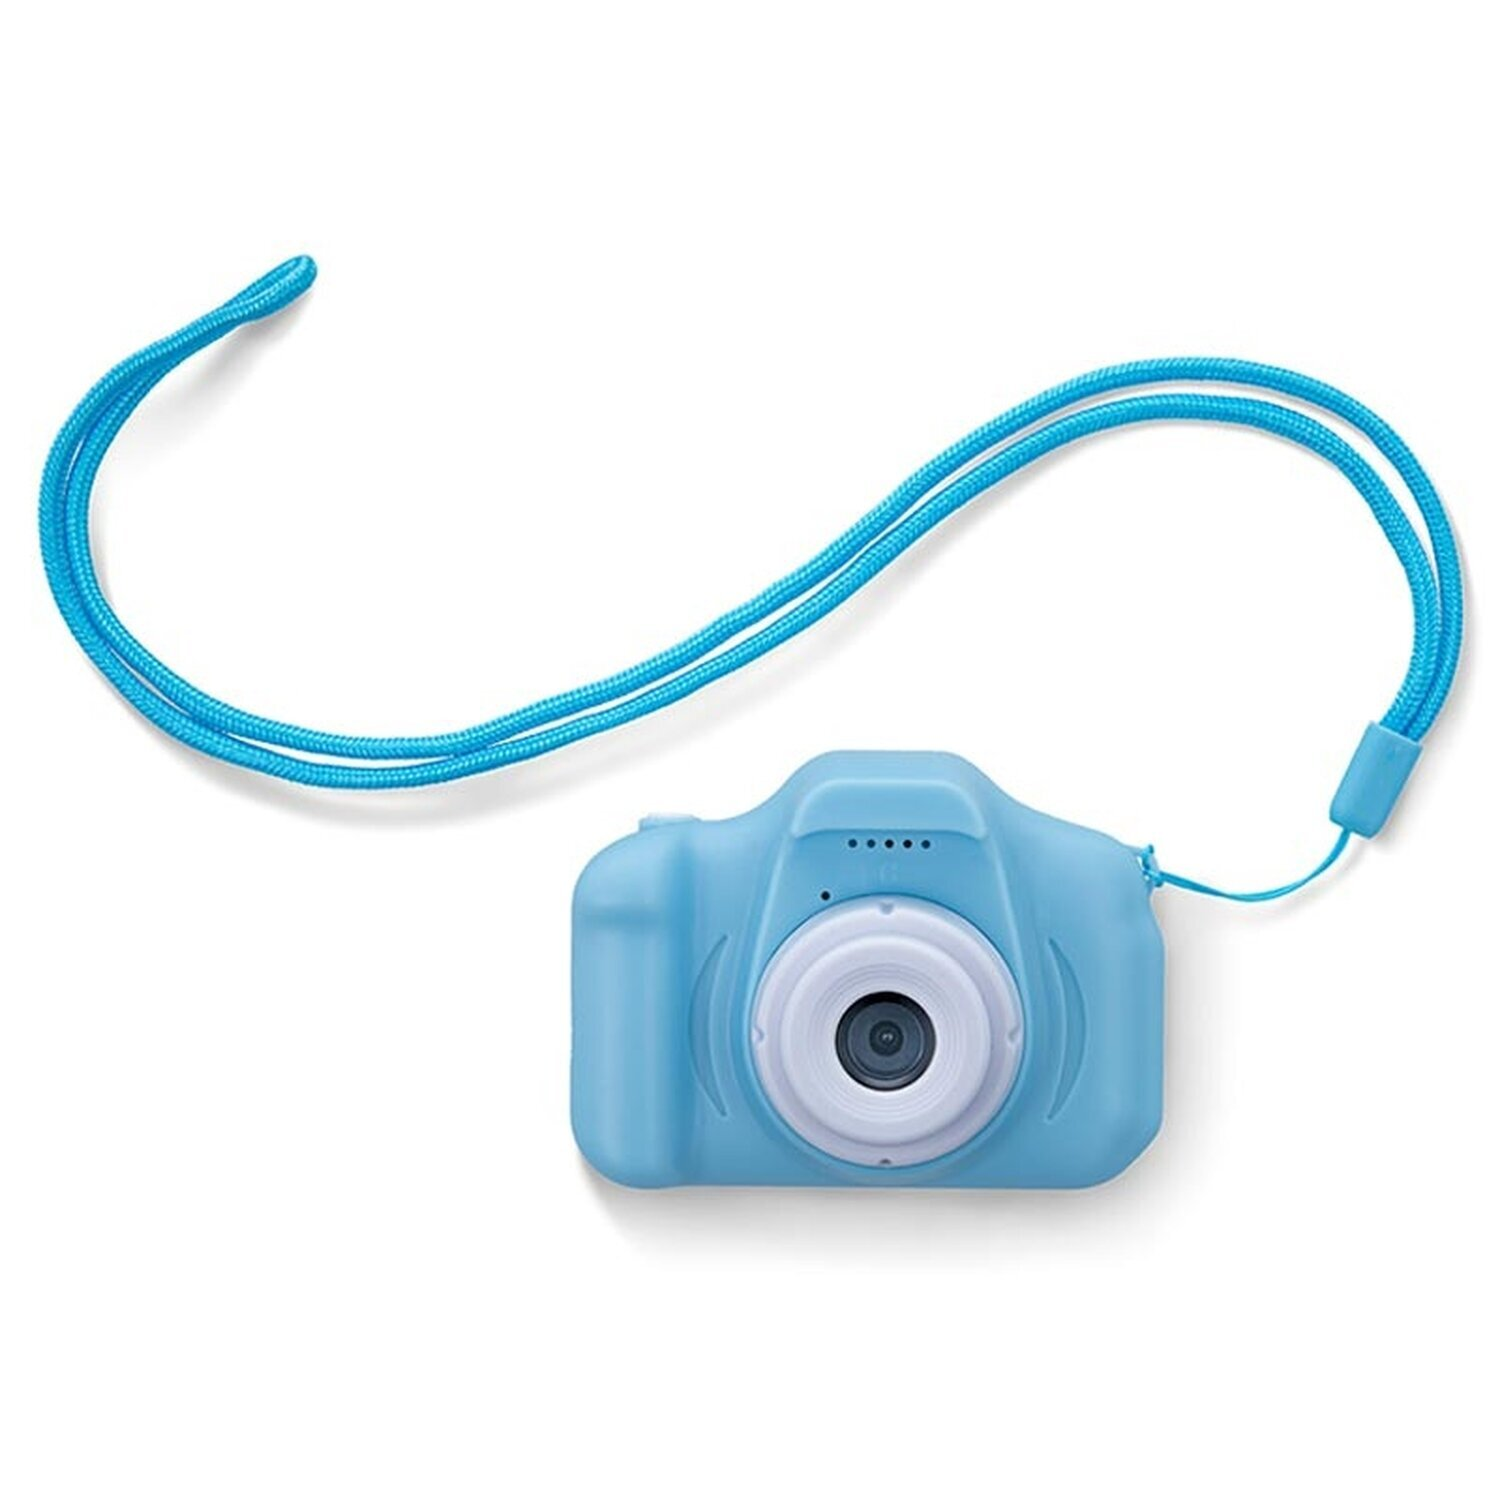 Digitalkamera SKC-100 Blau FOREVER